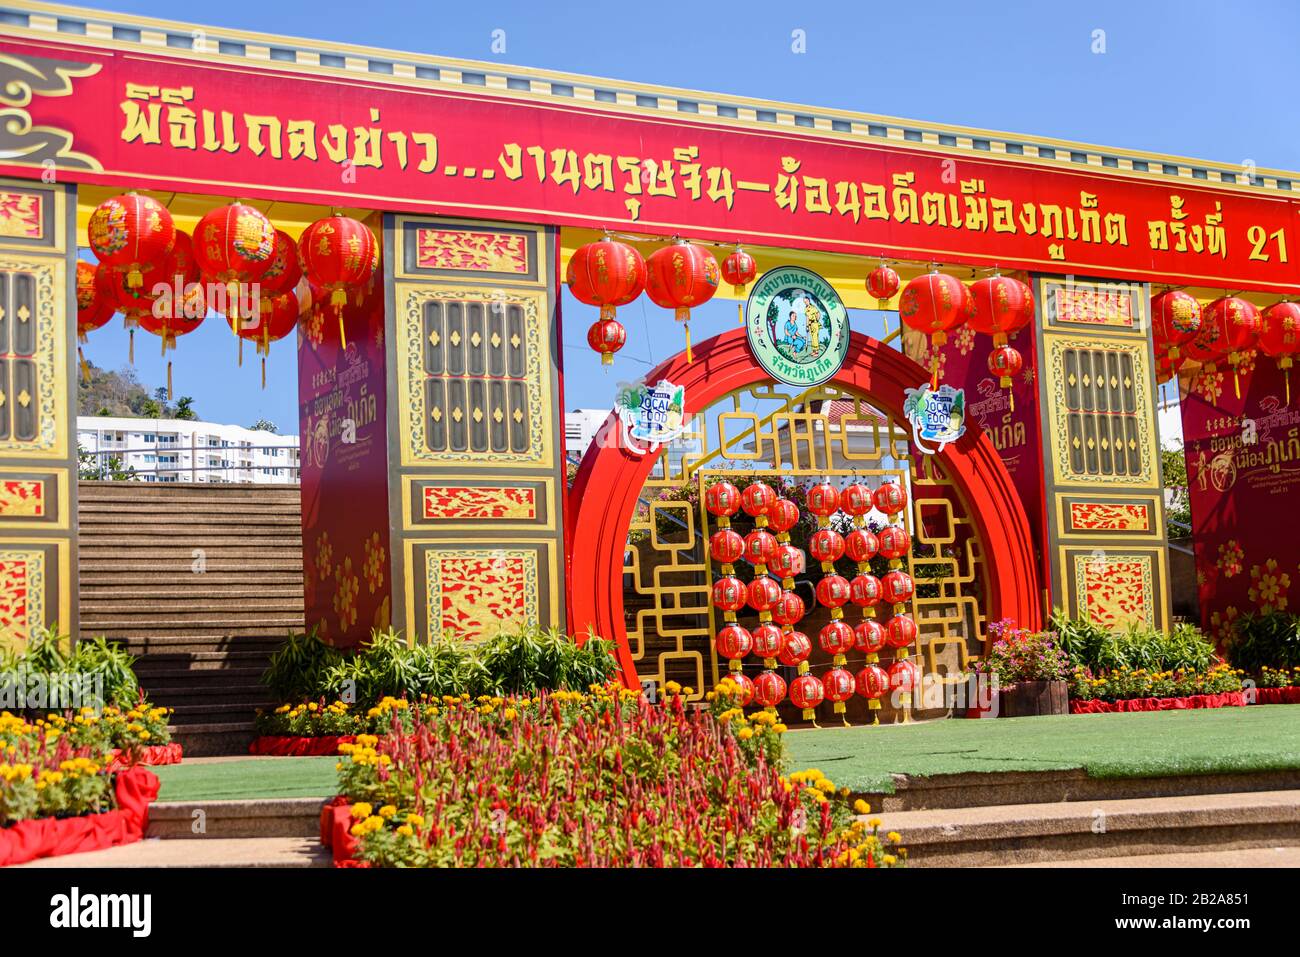 Décorations en place pour le festival chinois du nouvel an lunaire, Phuket, Thaïlande Banque D'Images